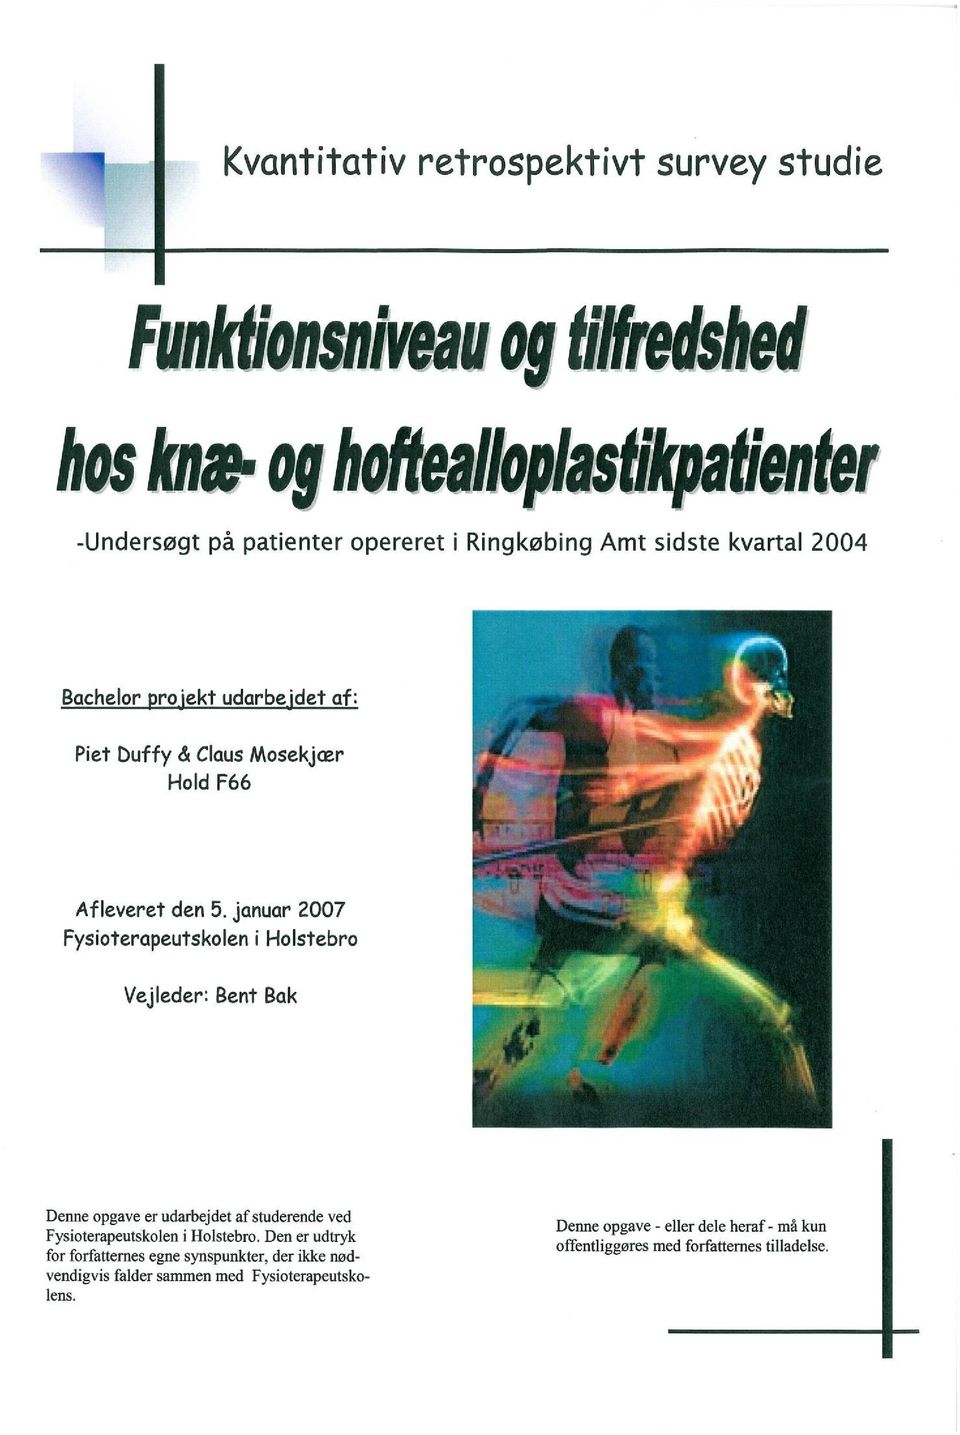 Undersøgelse af og tilfredshedsgraden på knæalloplastik og hoftealloplastik patienter - PDF Gratis download